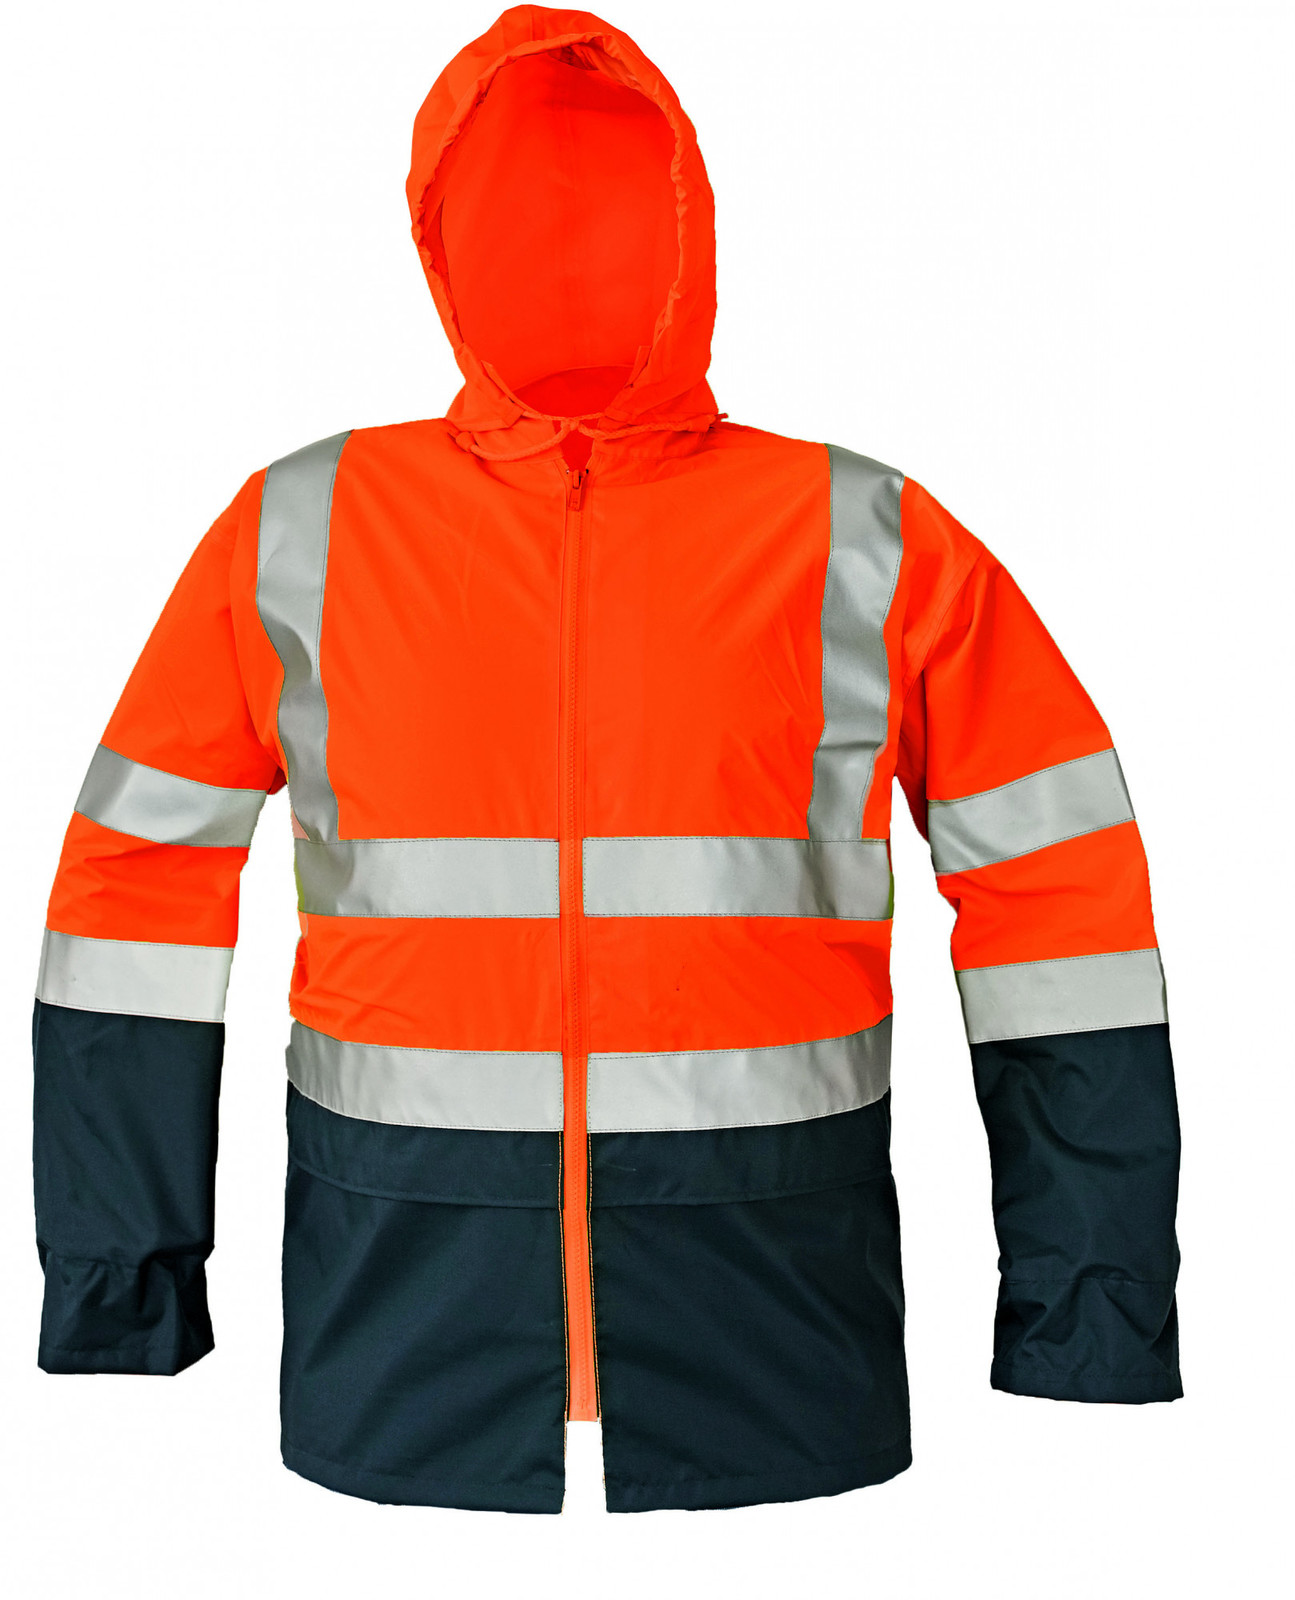 Reflexná pracovná bunda Epping - veľkosť: S, farba: oranžová/navy